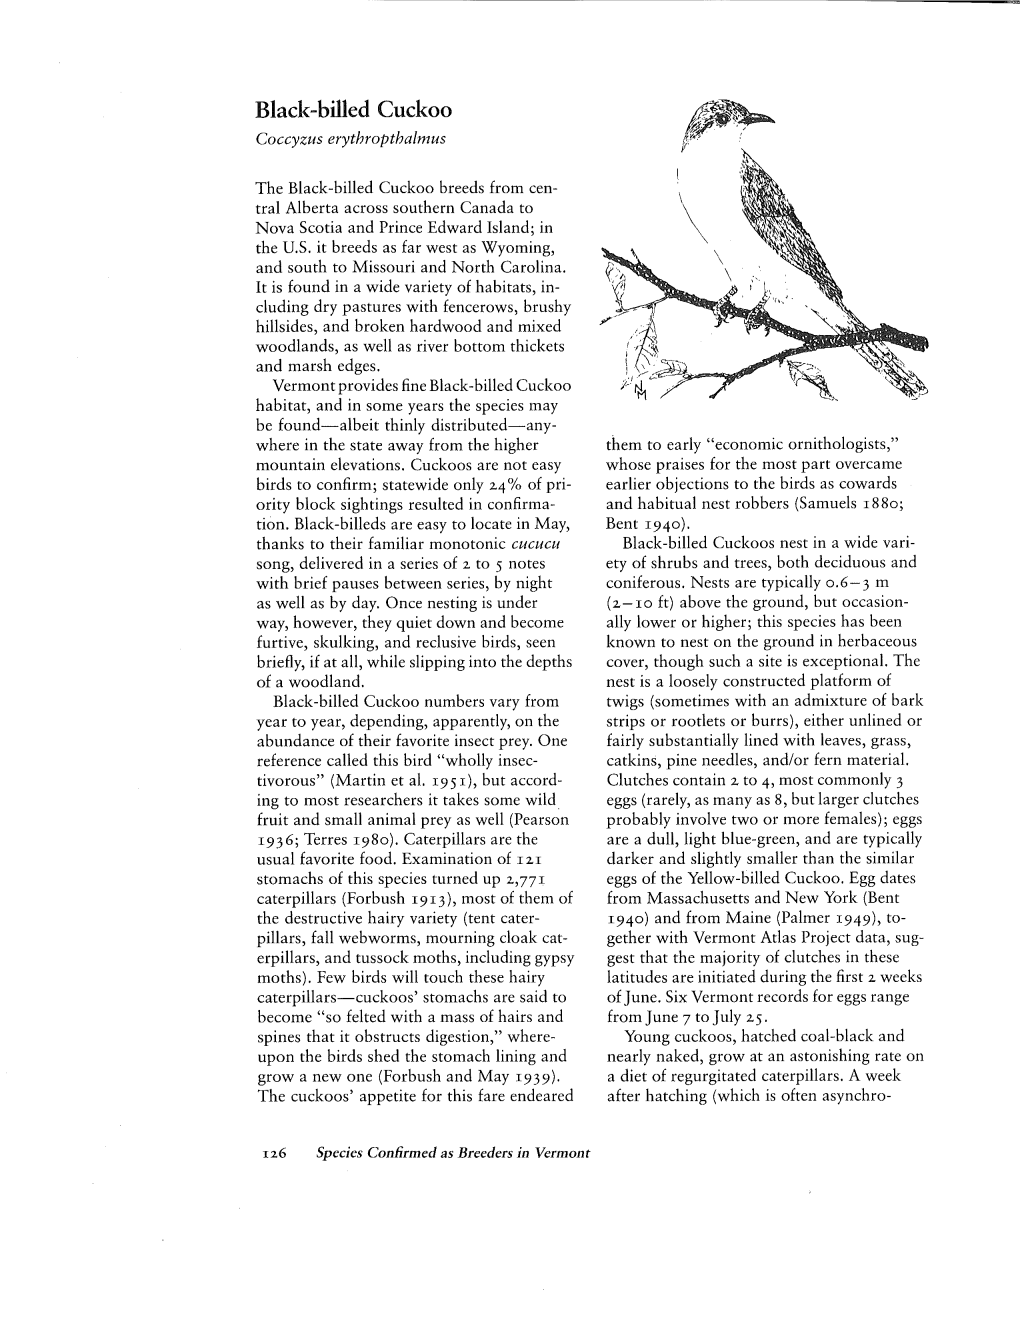 Black-Billed Cuckoo Coccyzus Erythropthalmus